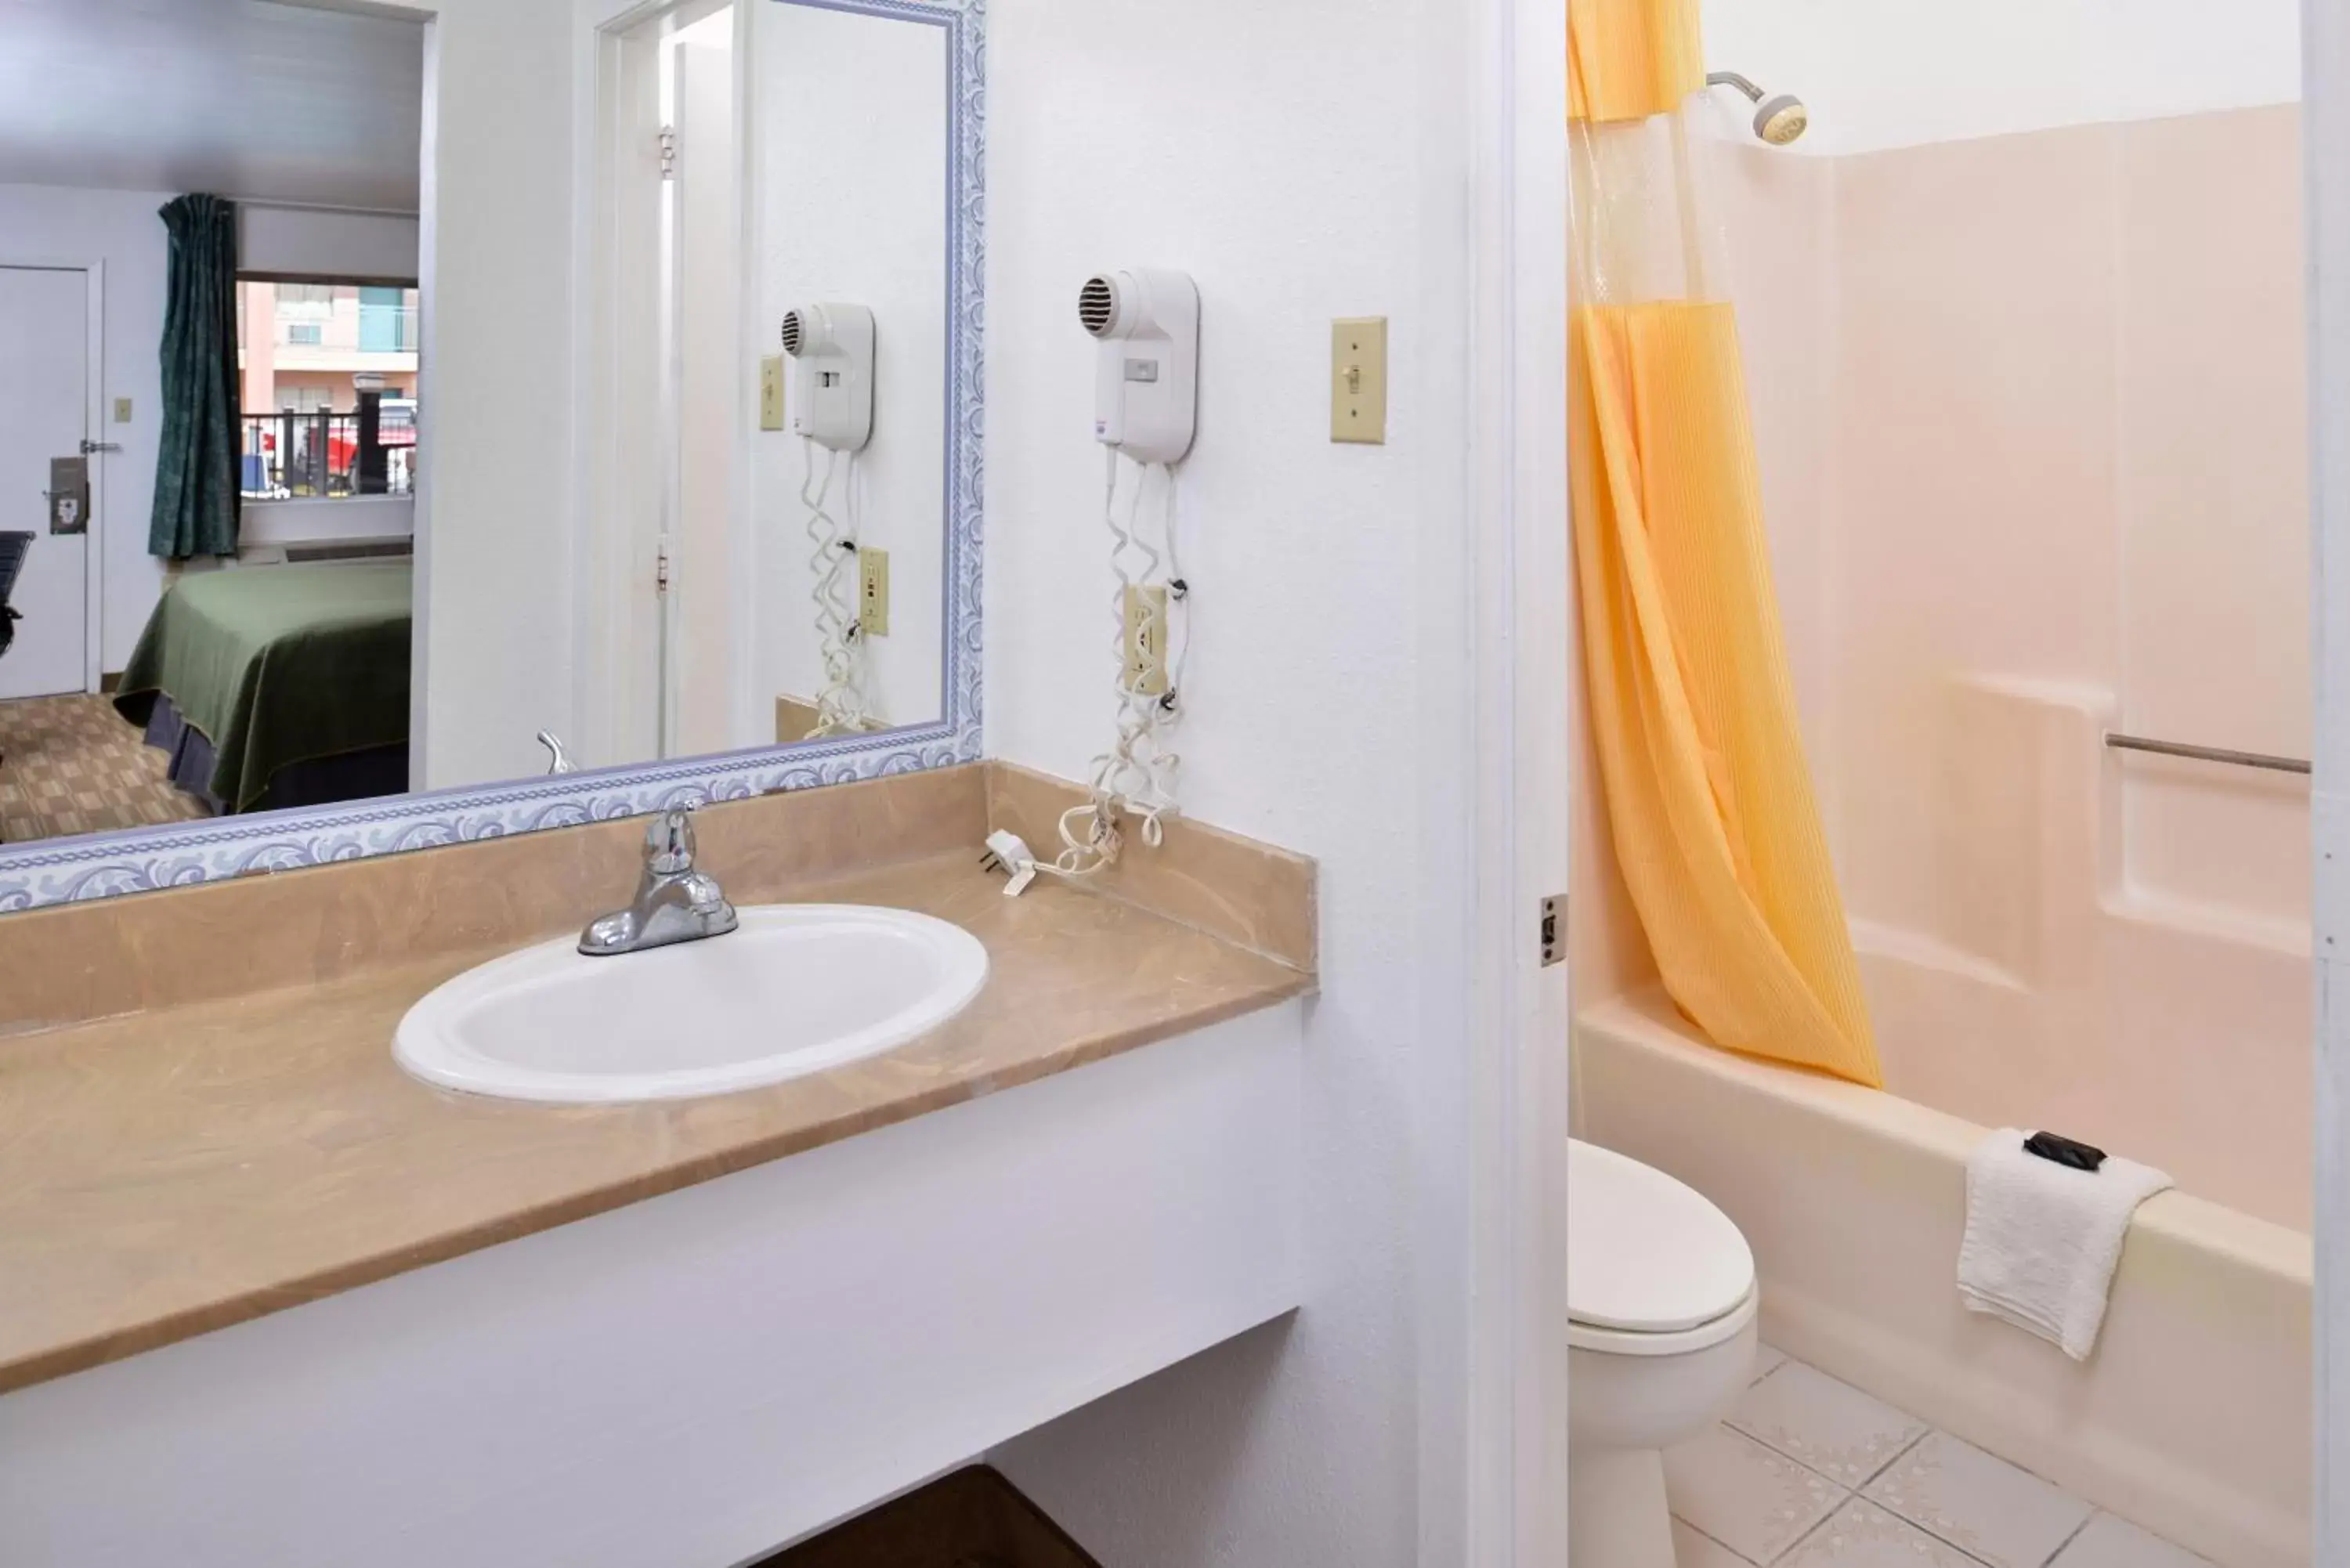 Bedroom, Bathroom in Americas Best Value Inn Clute